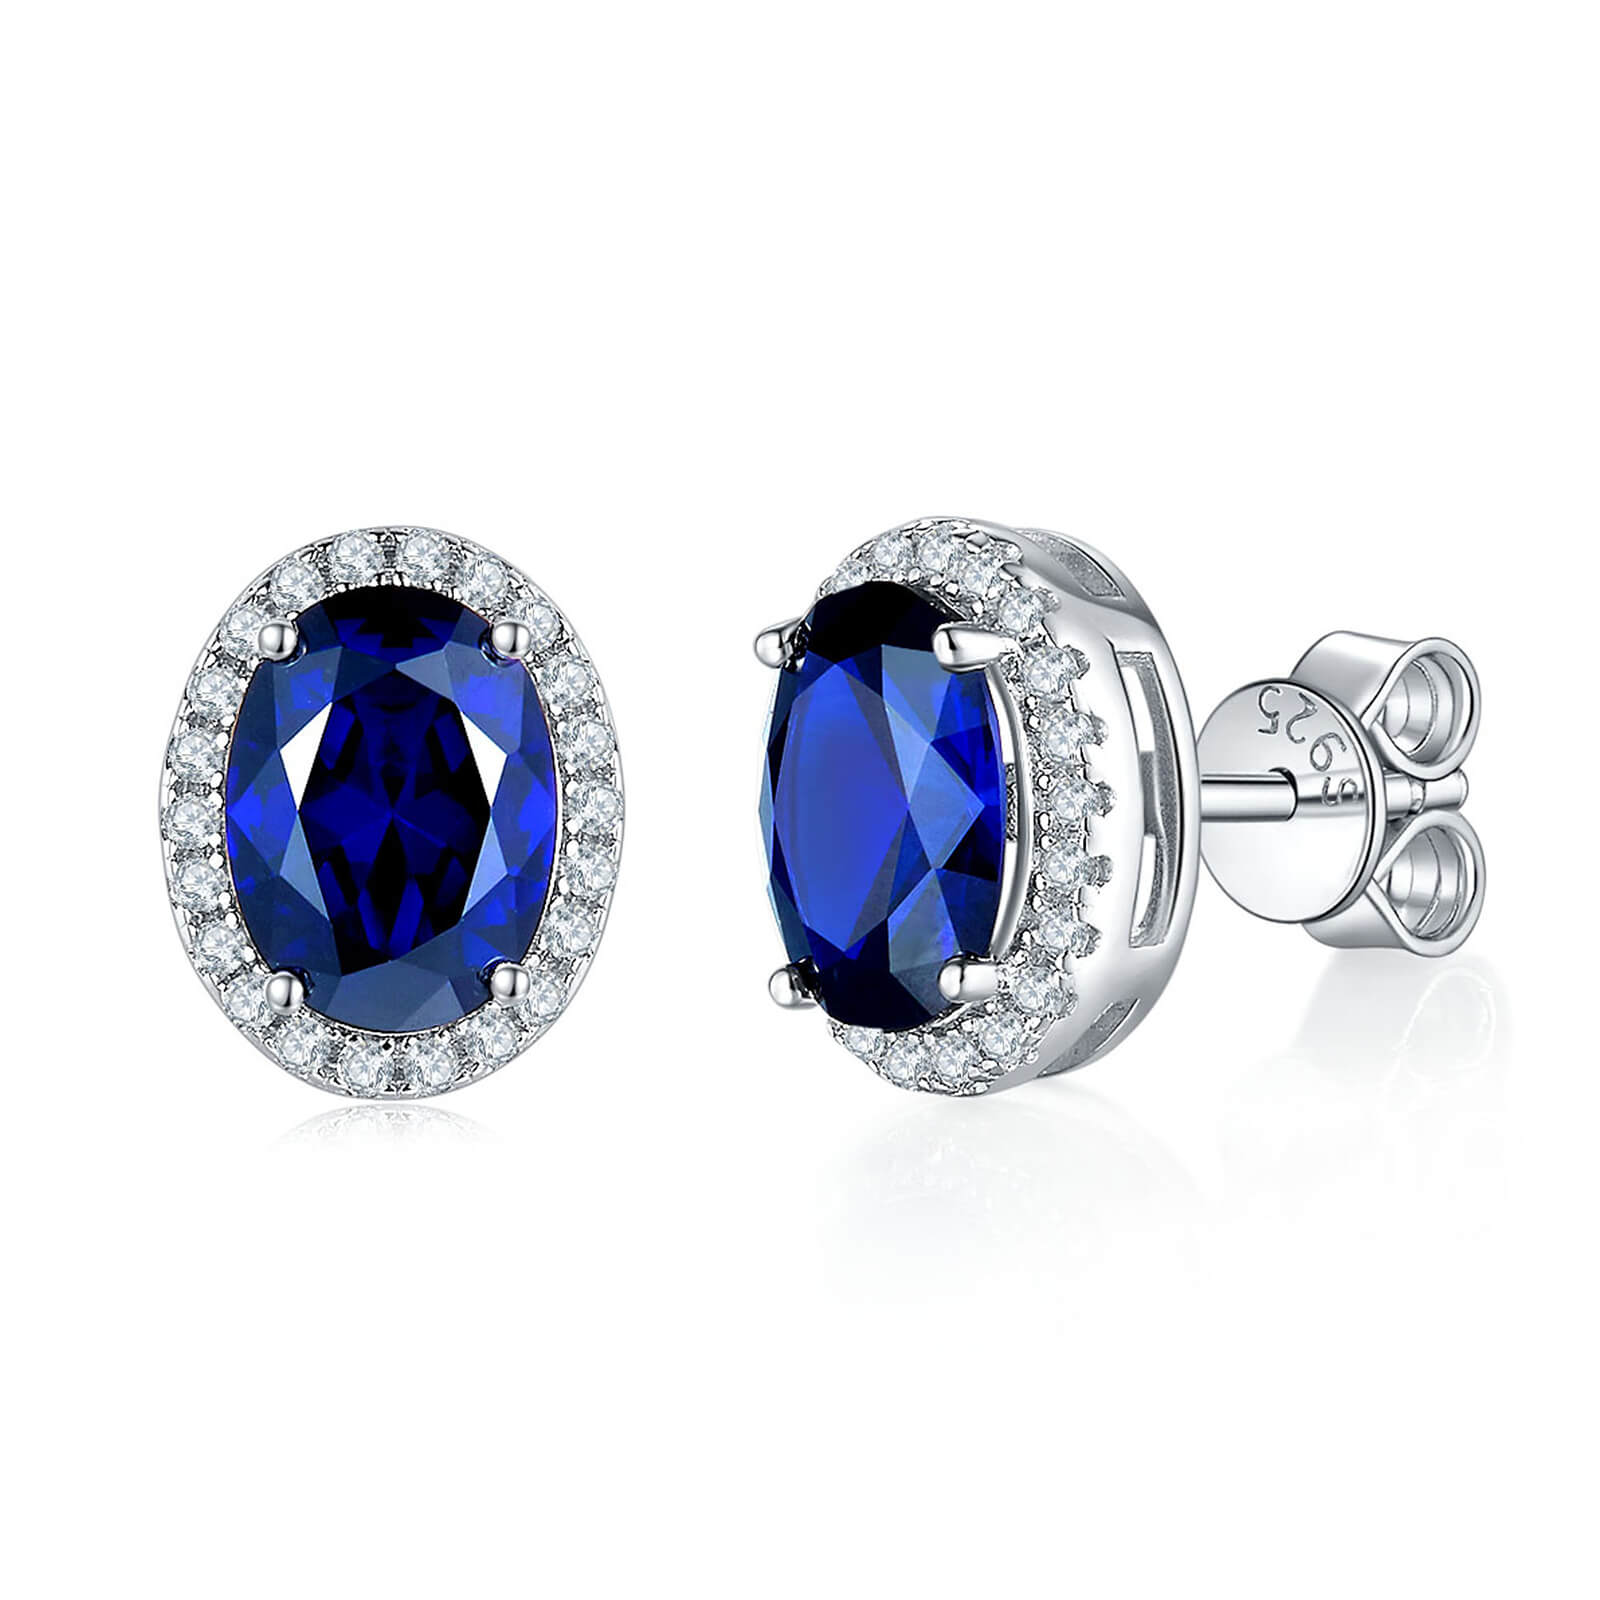 BOYA 1 CTW / 2.4 CTW Oval Sapphire Halo Stud Earrings in 925 Sterling Silver